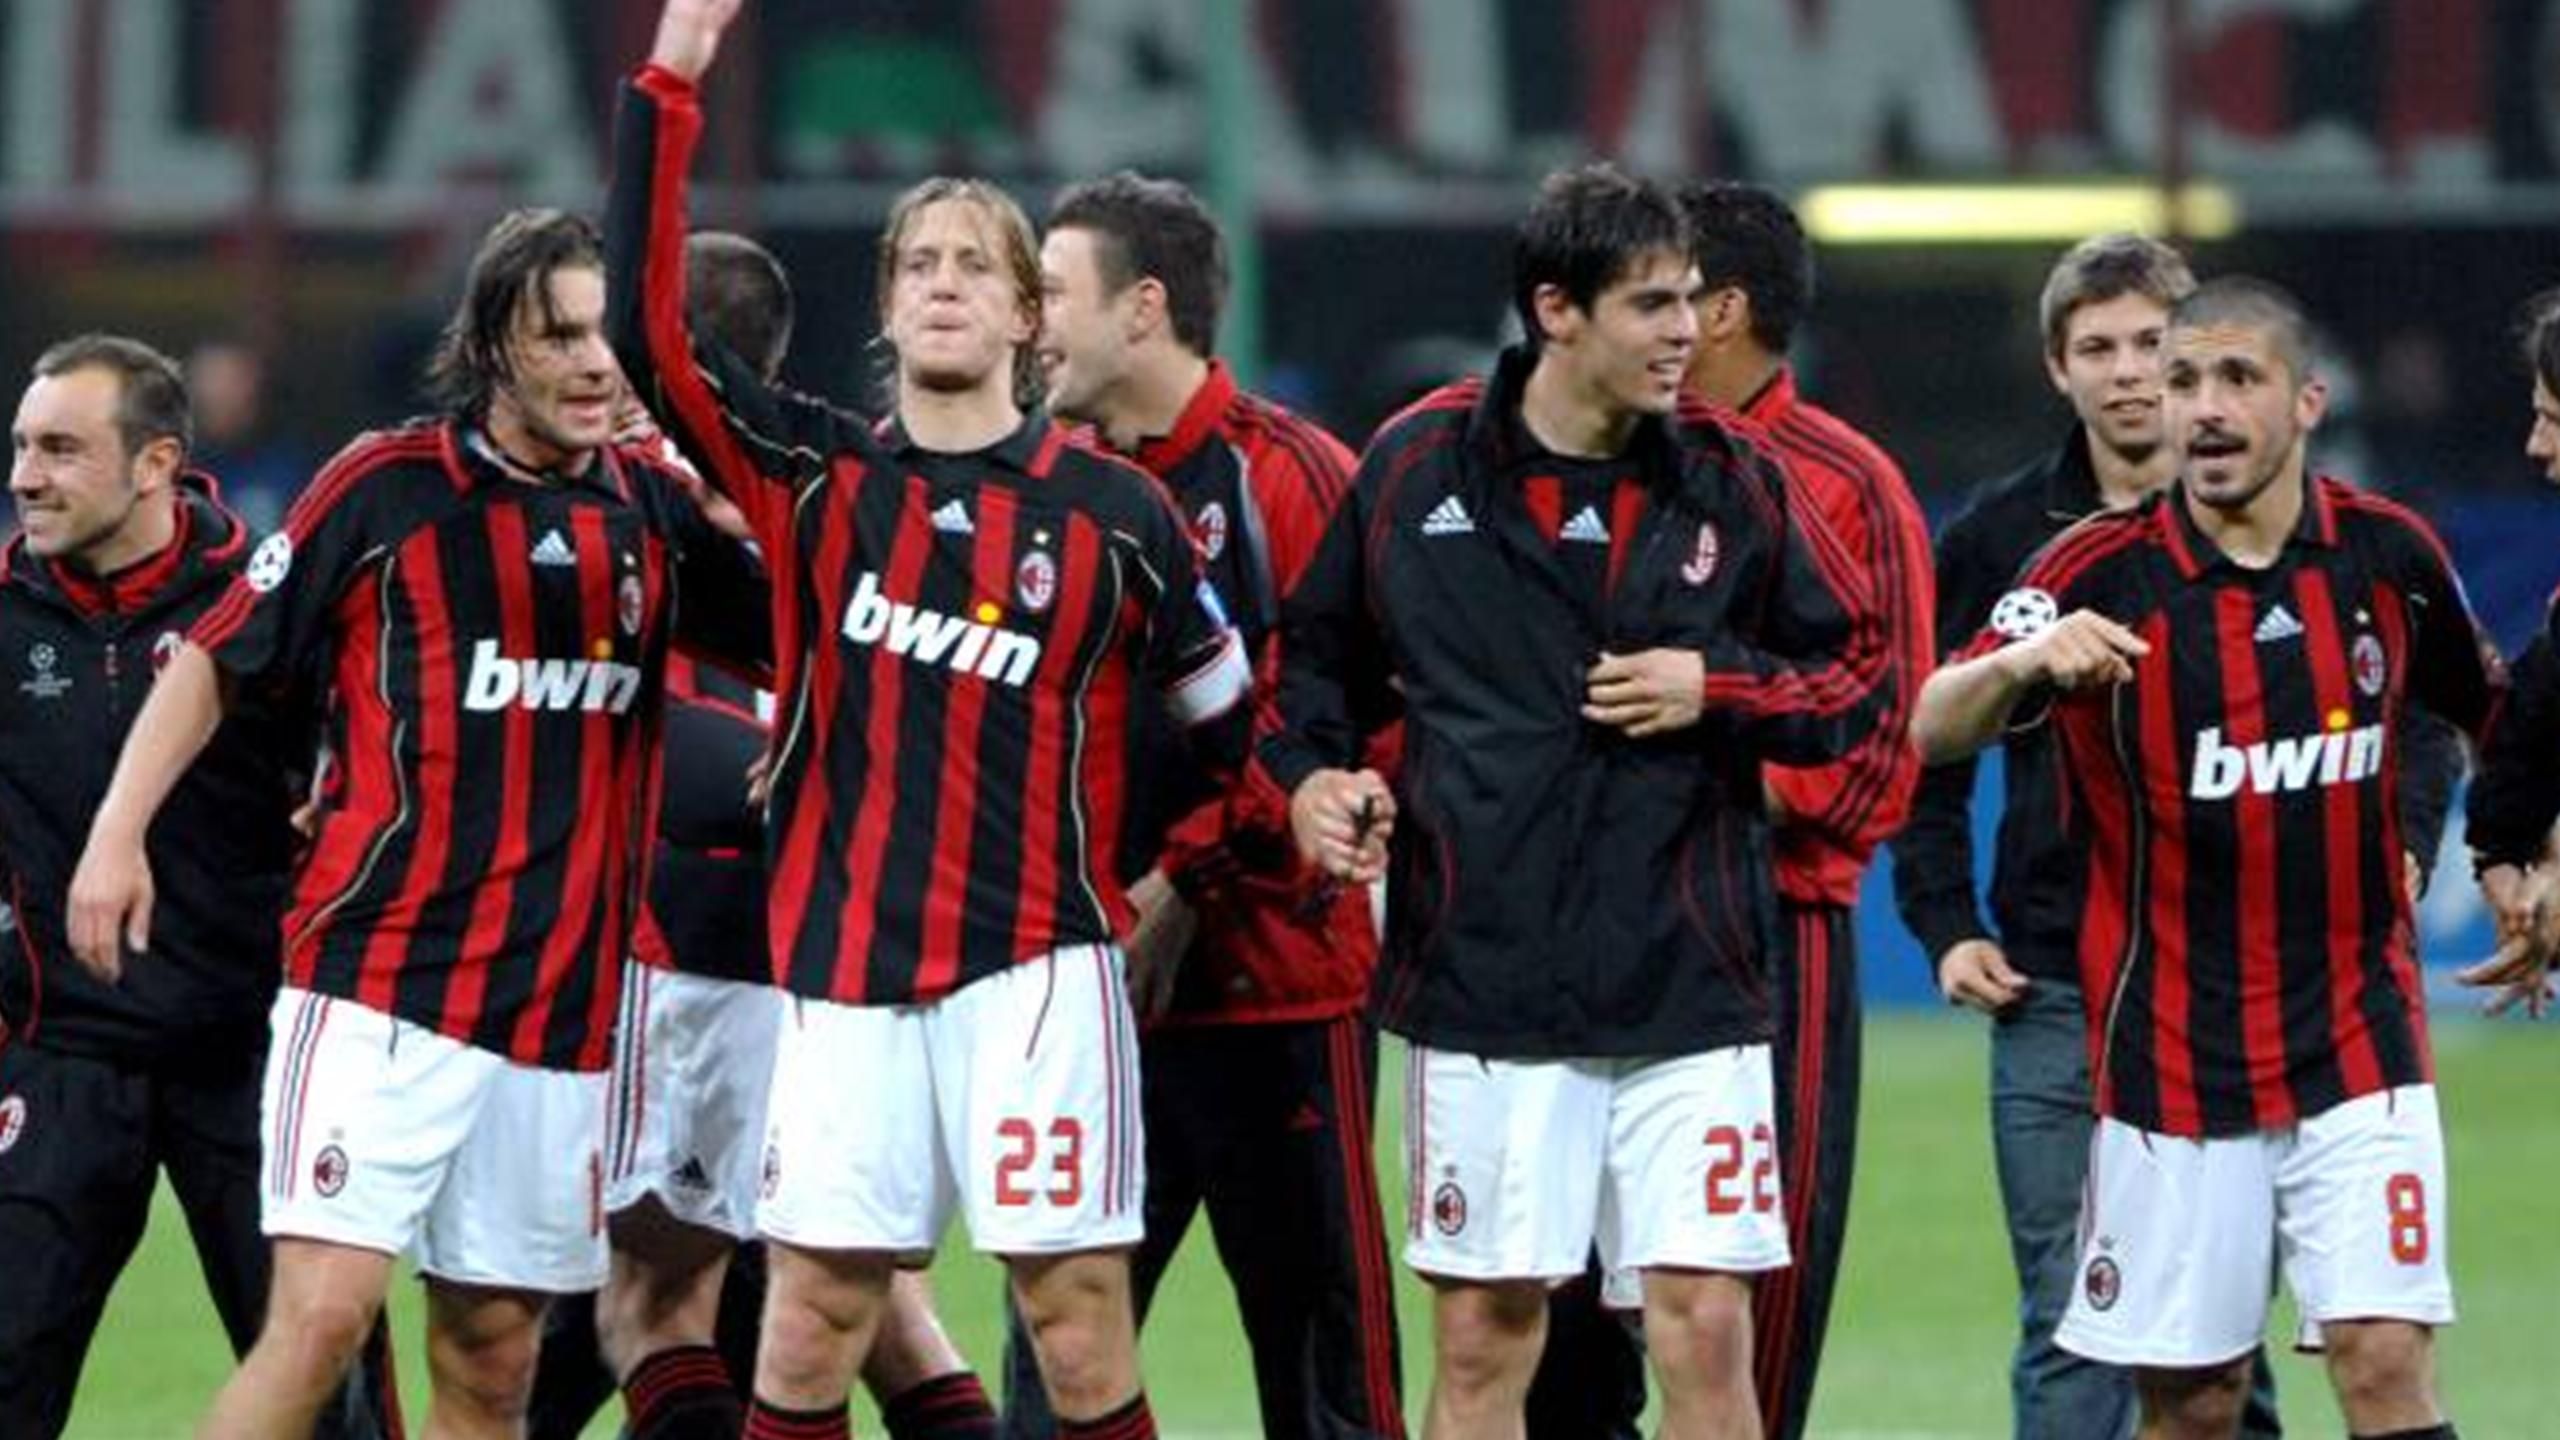 Forespørgsel Analytisk Regnjakke Milan eye revenge - Eurosport